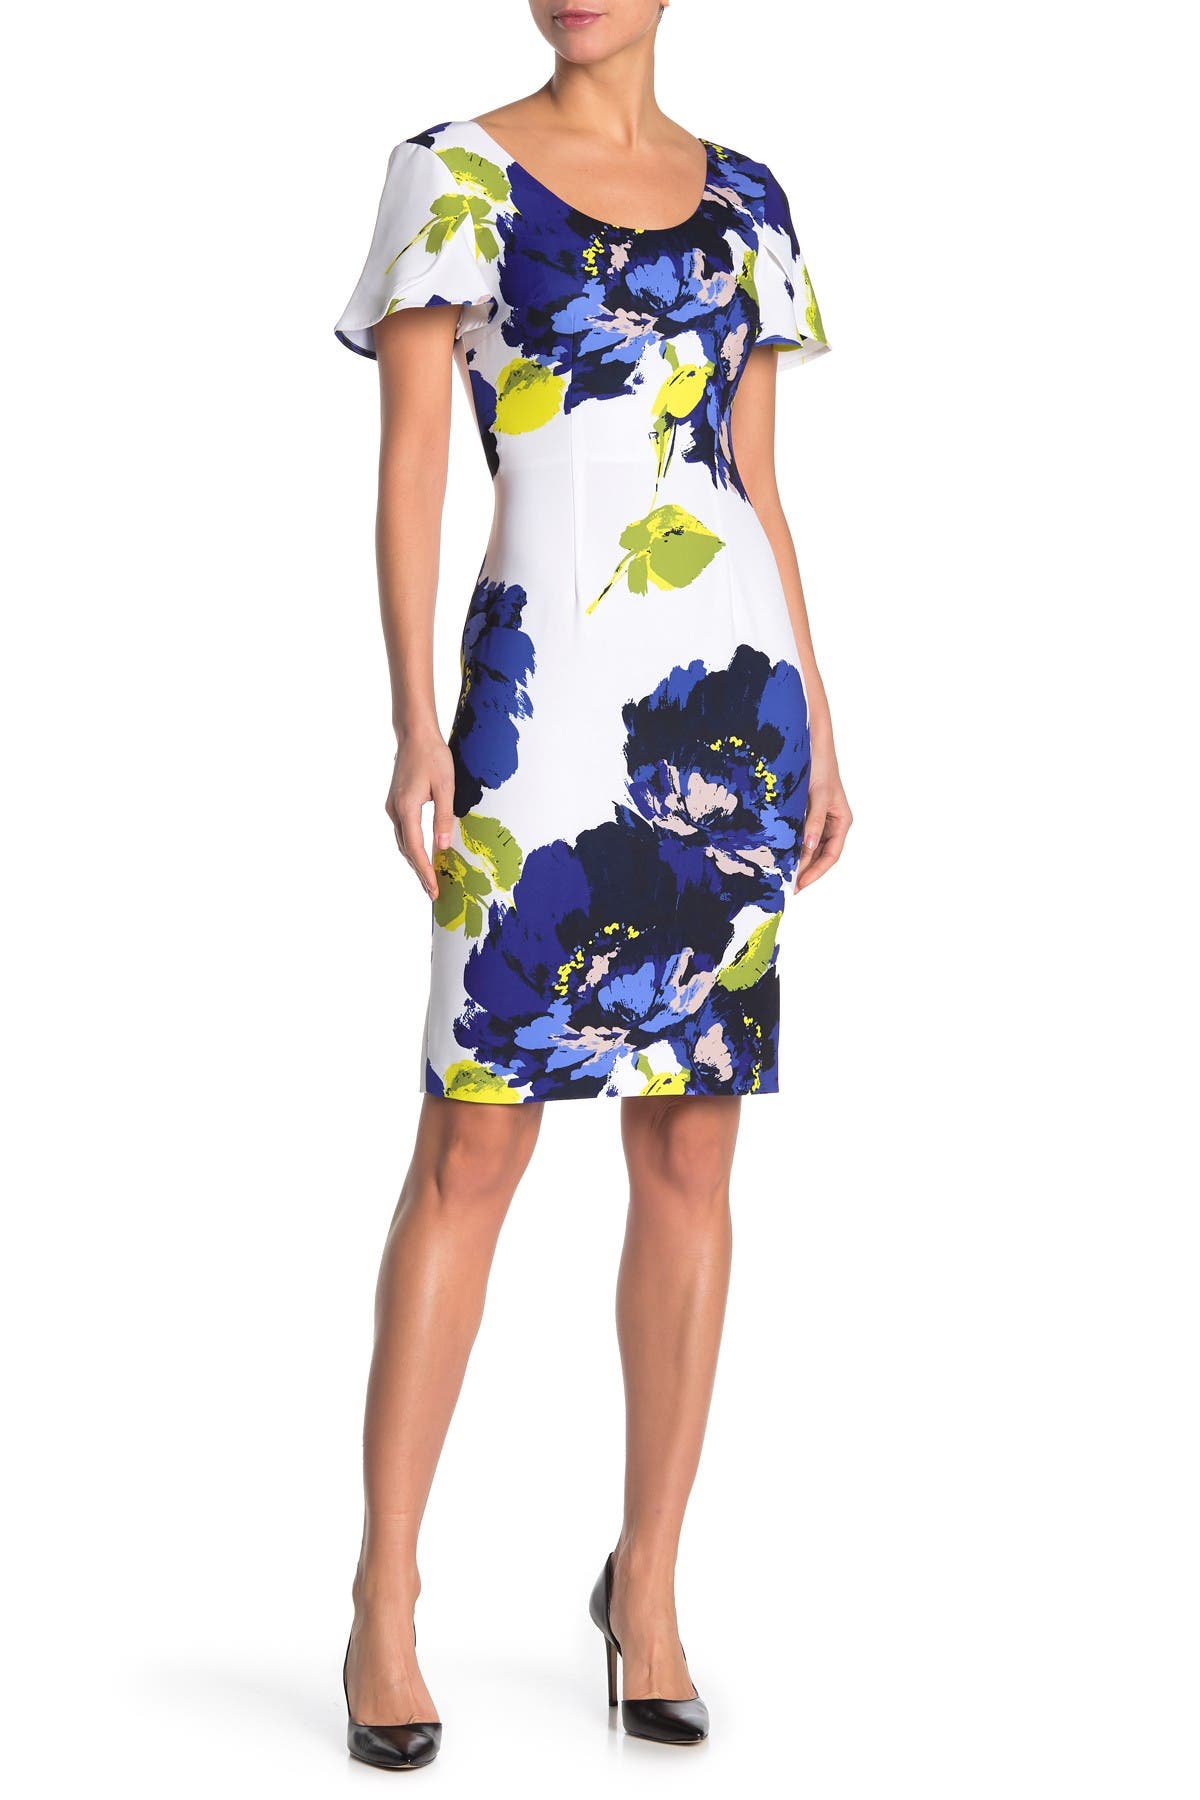 Trina Turk Floral Dress Flash Sales, UP ...